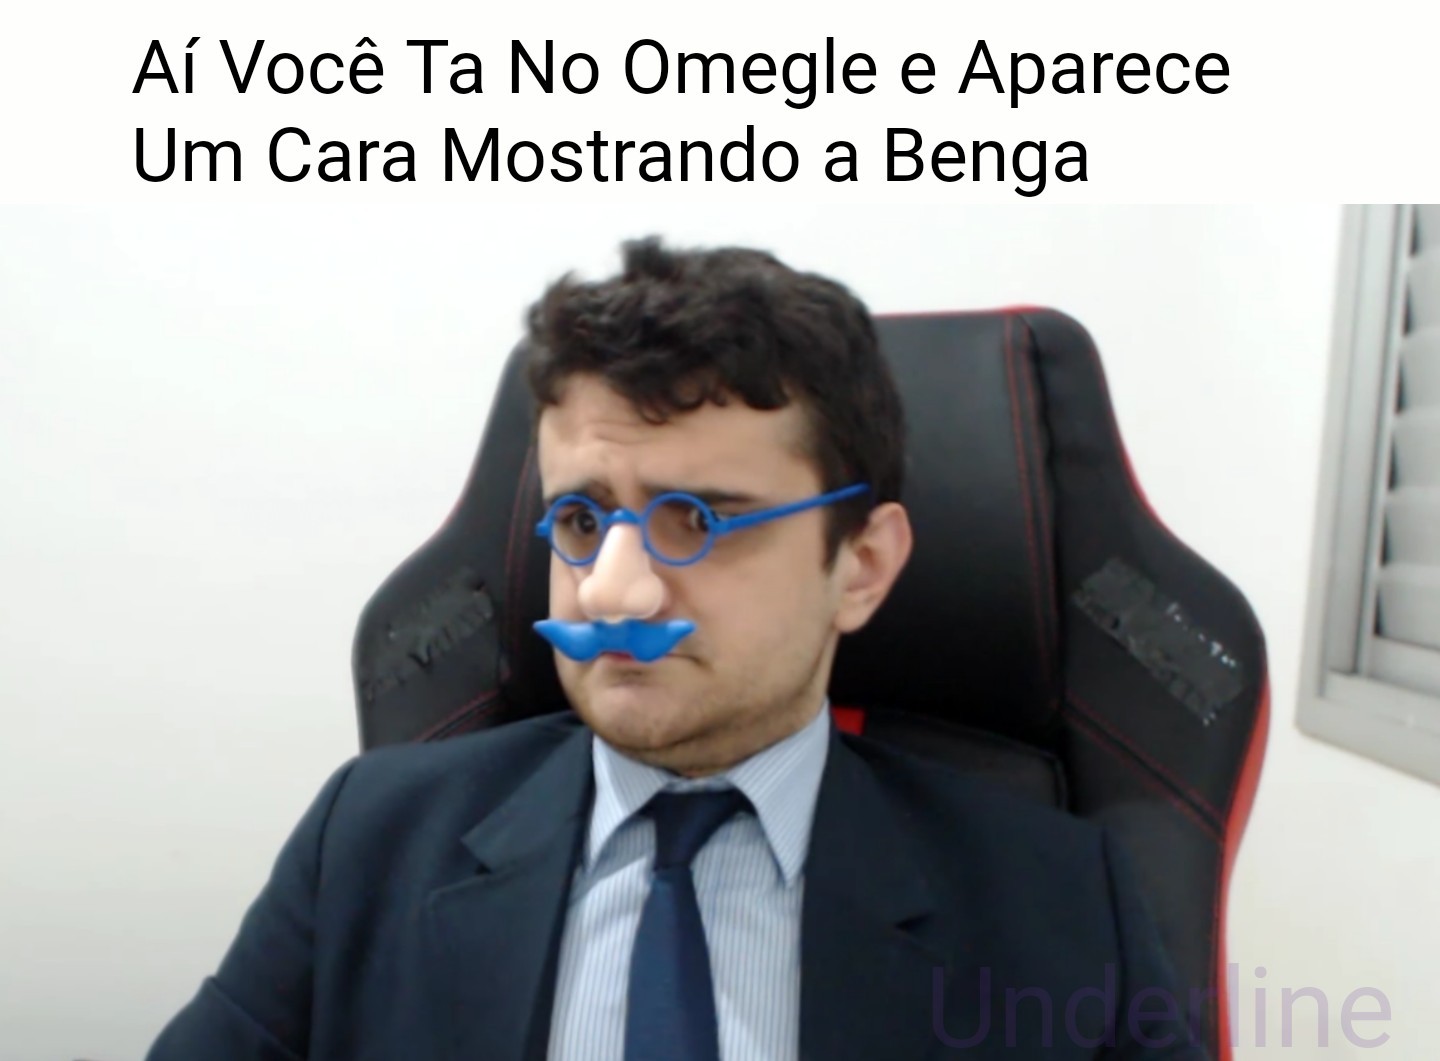 BEMGA - meme